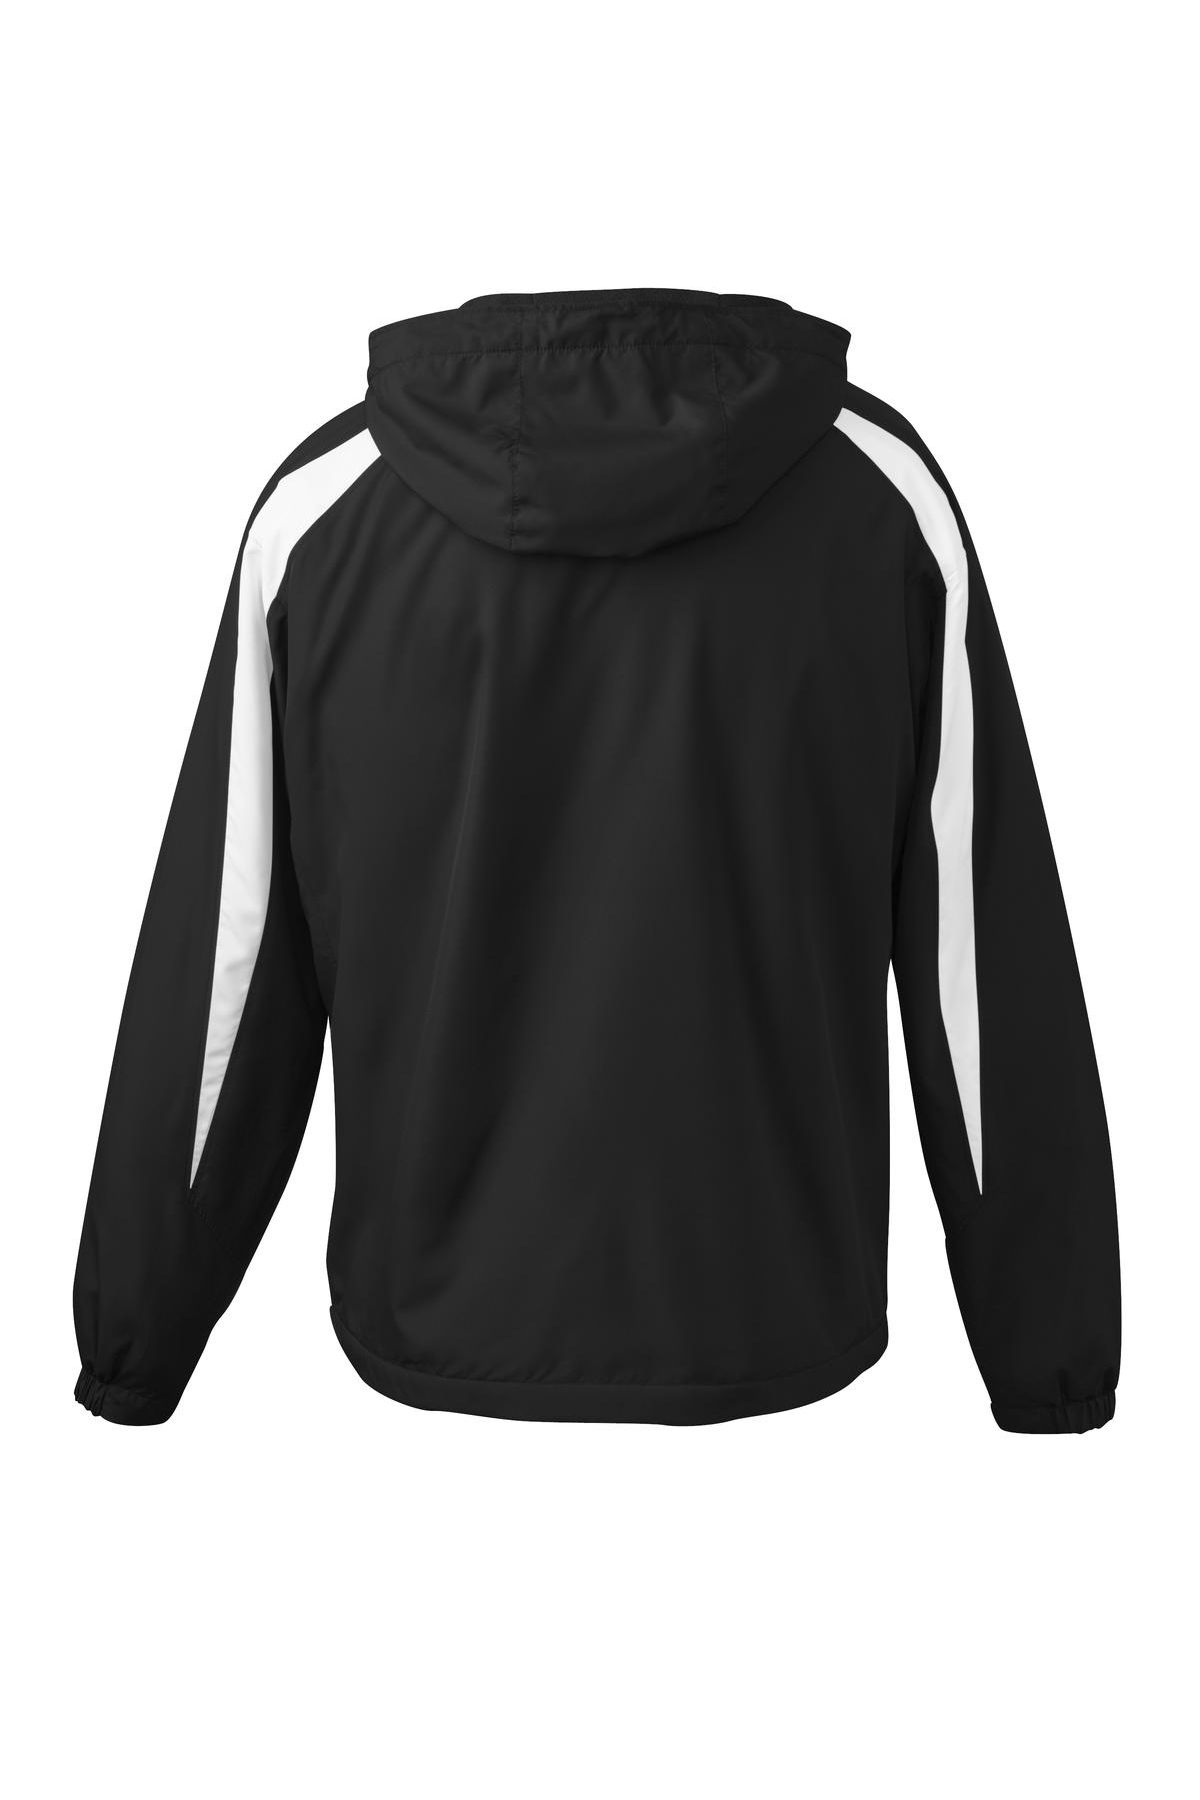 Sport-Tek Youth Fleece-Lined Colorblock Jacket Black/White YST81 